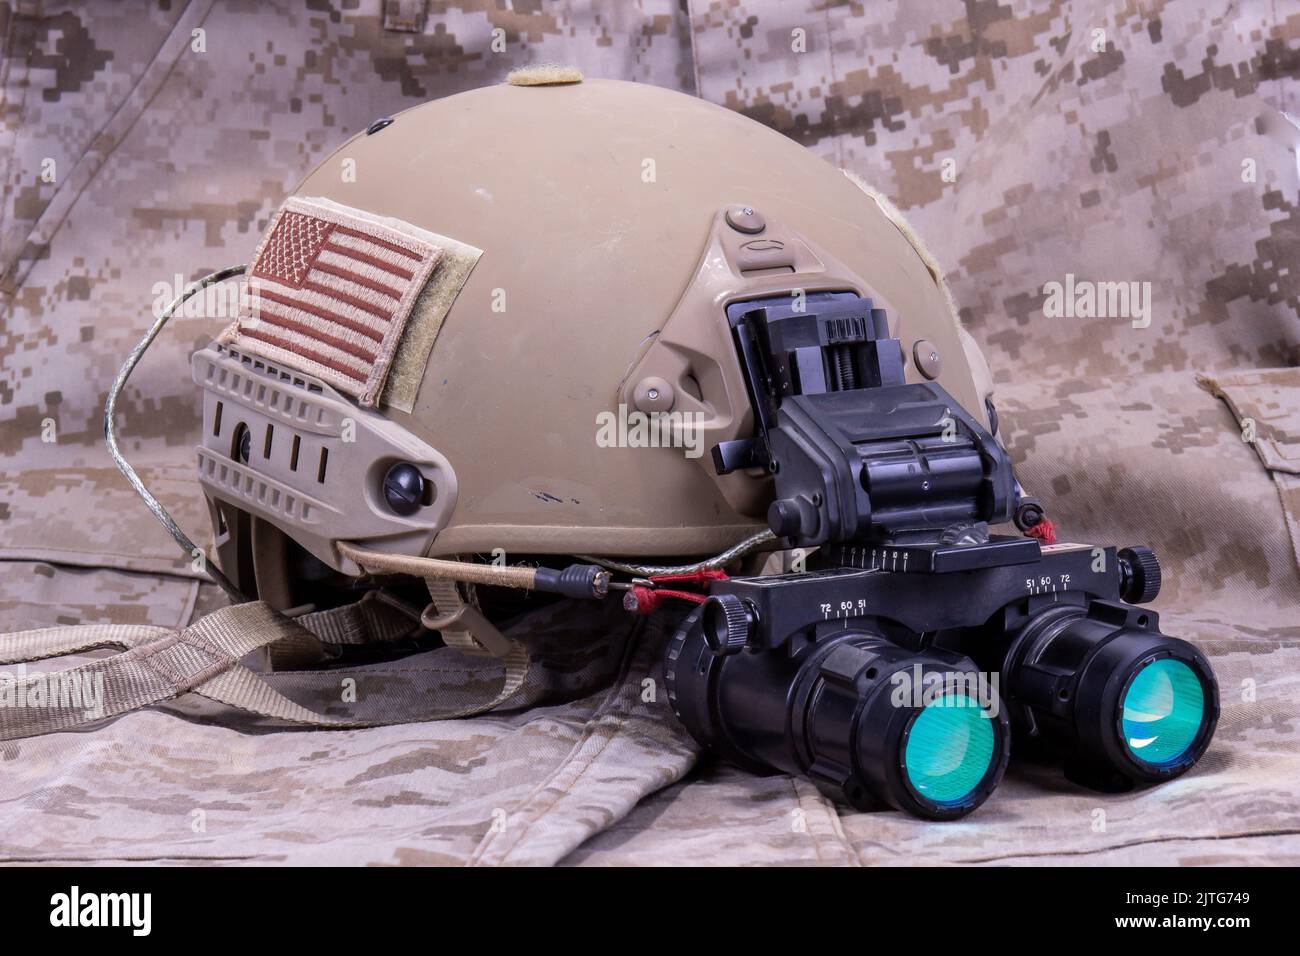 Casco militare americano con visione notturna in uniforme camouflage Foto Stock